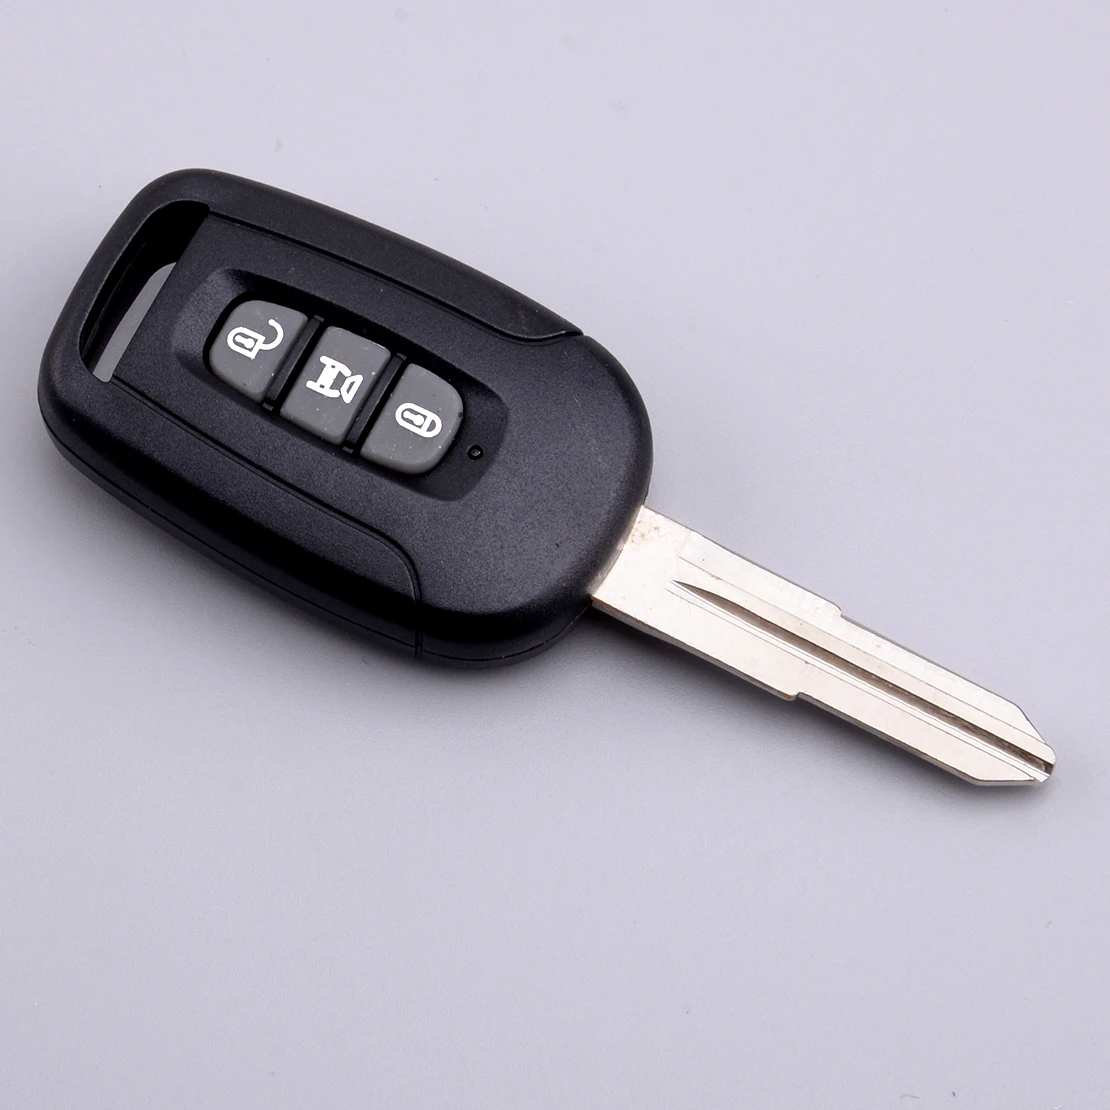 

Автомобильный Брелок дистанционного управления с ключом 3 кнопки, пригодный для Chevrolet Captiva 2008 2009 2010 2011 2012 2013 433 МГц ID46 чип